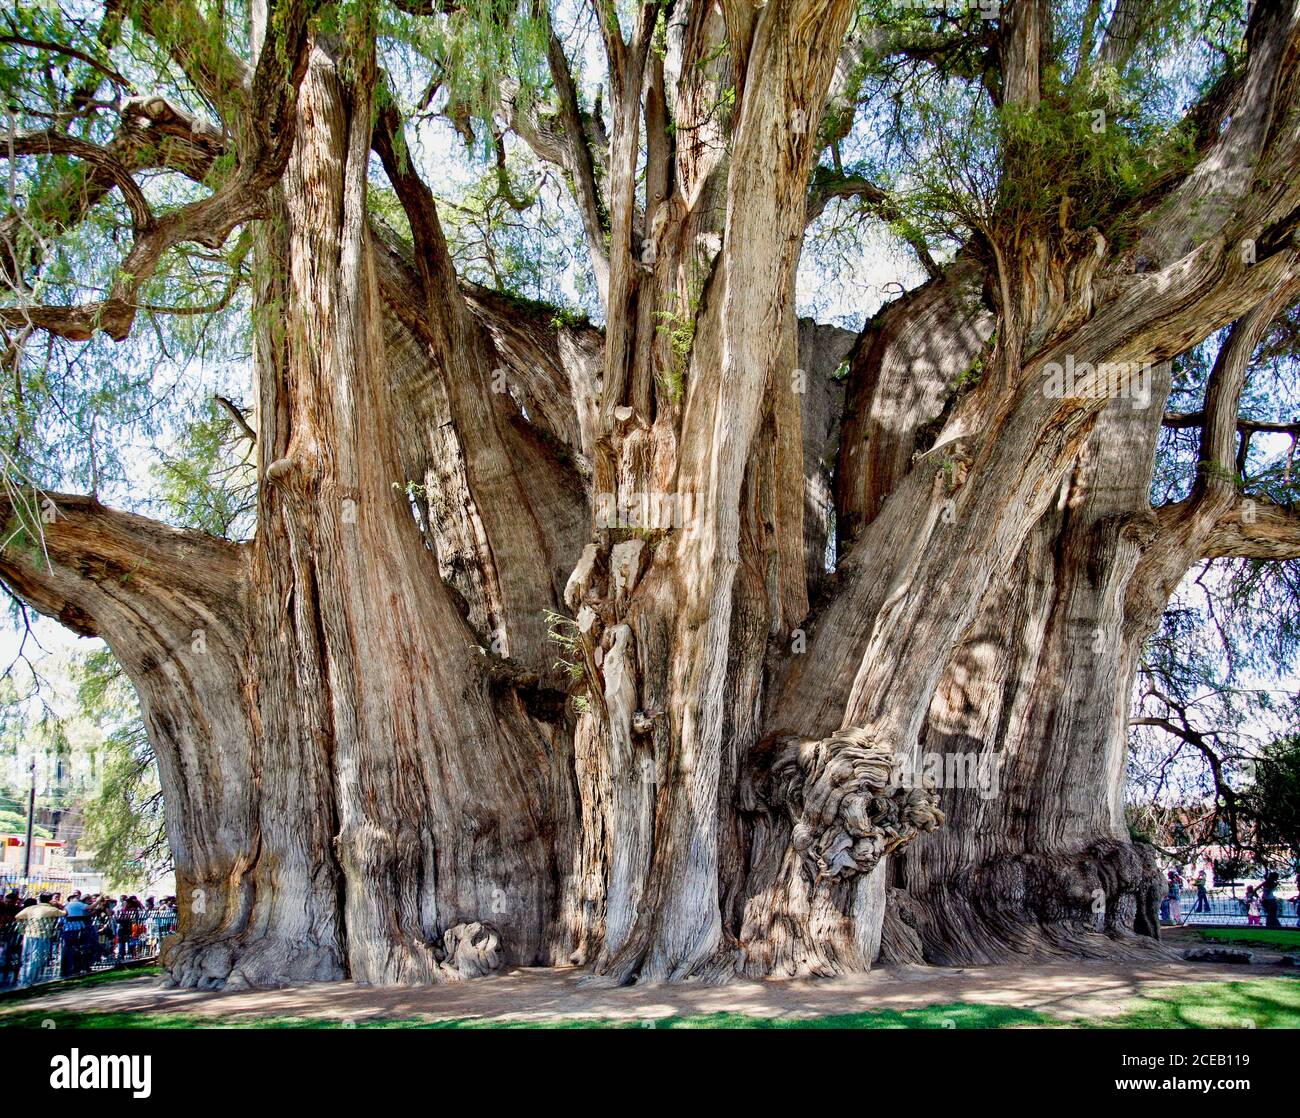 giant tree at Tule, Oaxaca, Mexico Stock Photo